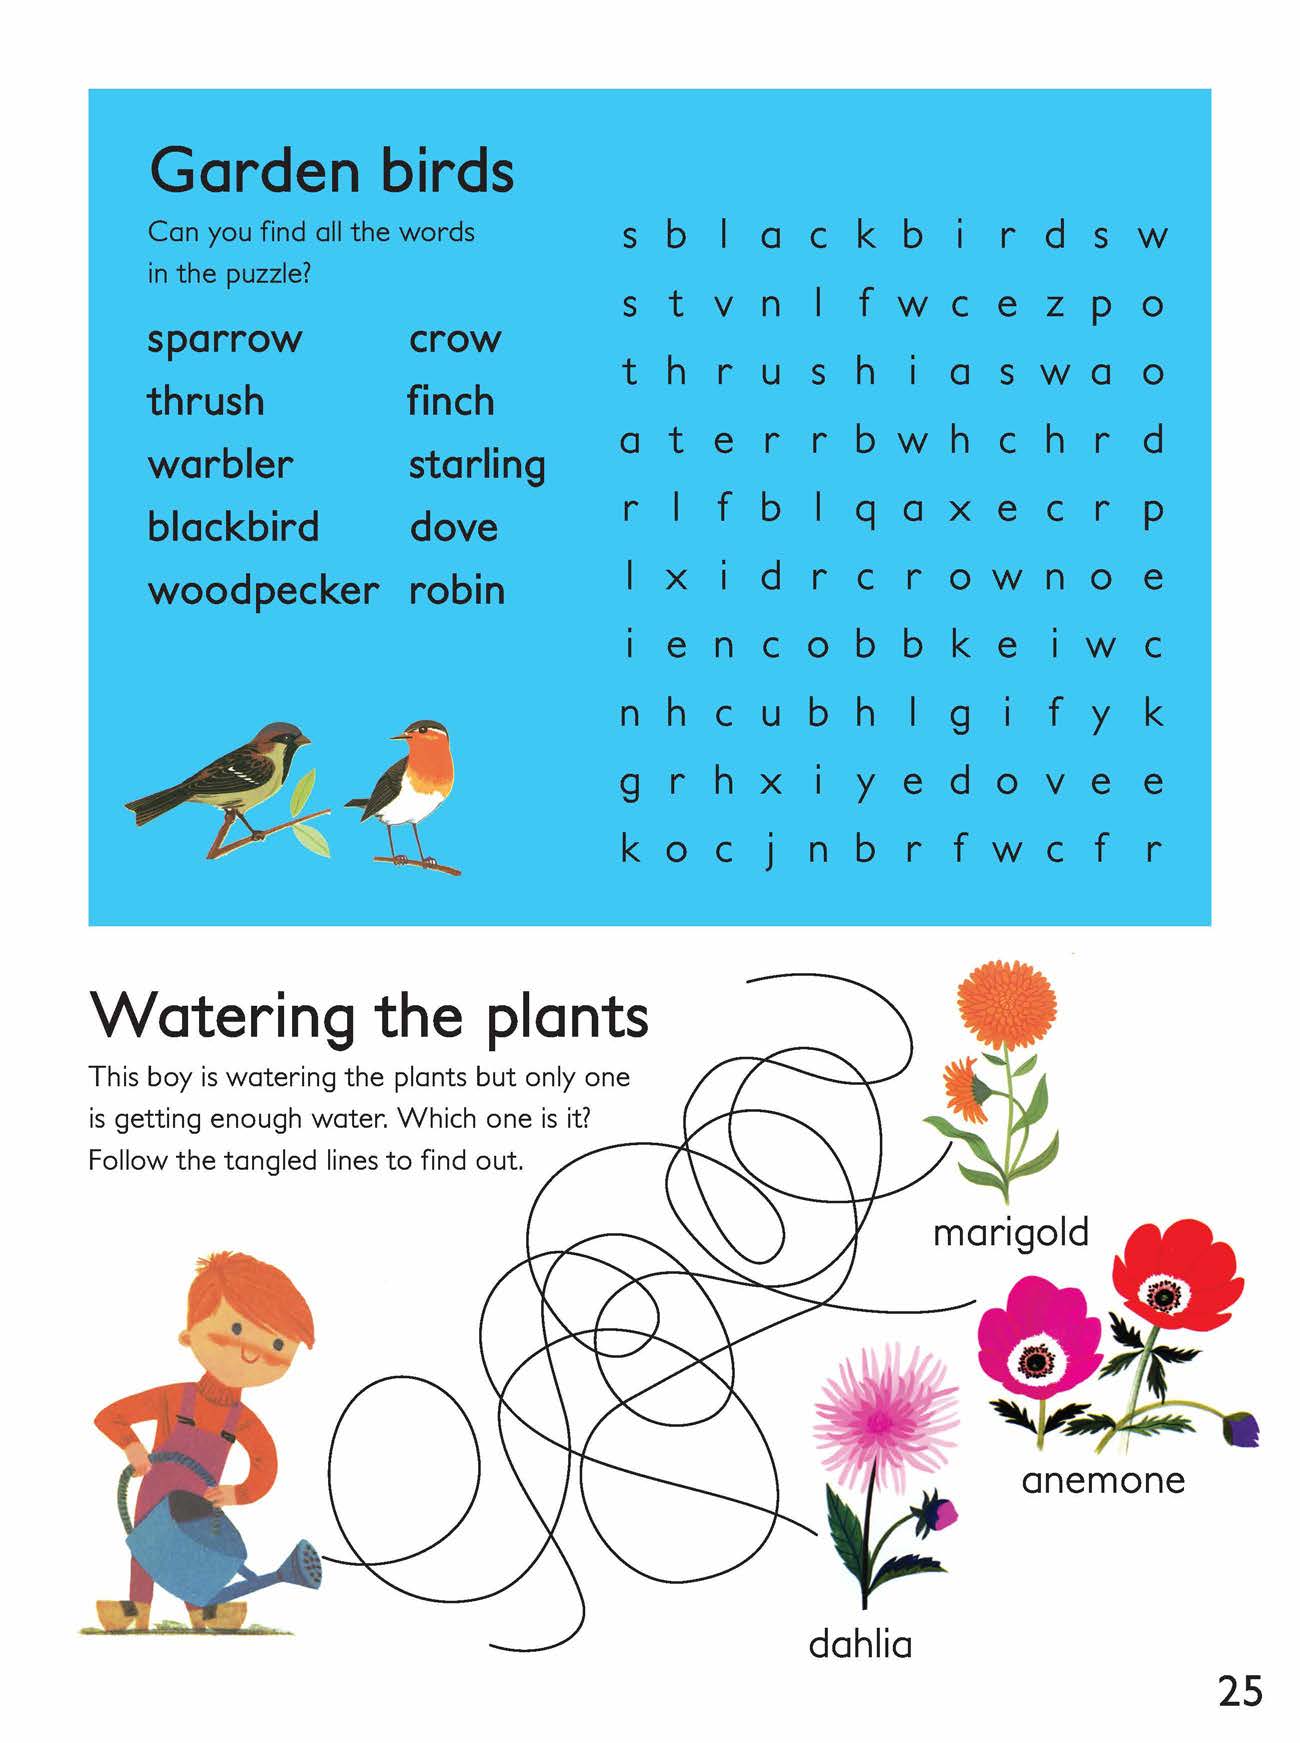 Garden Birds Word Search Activity Sheet   image